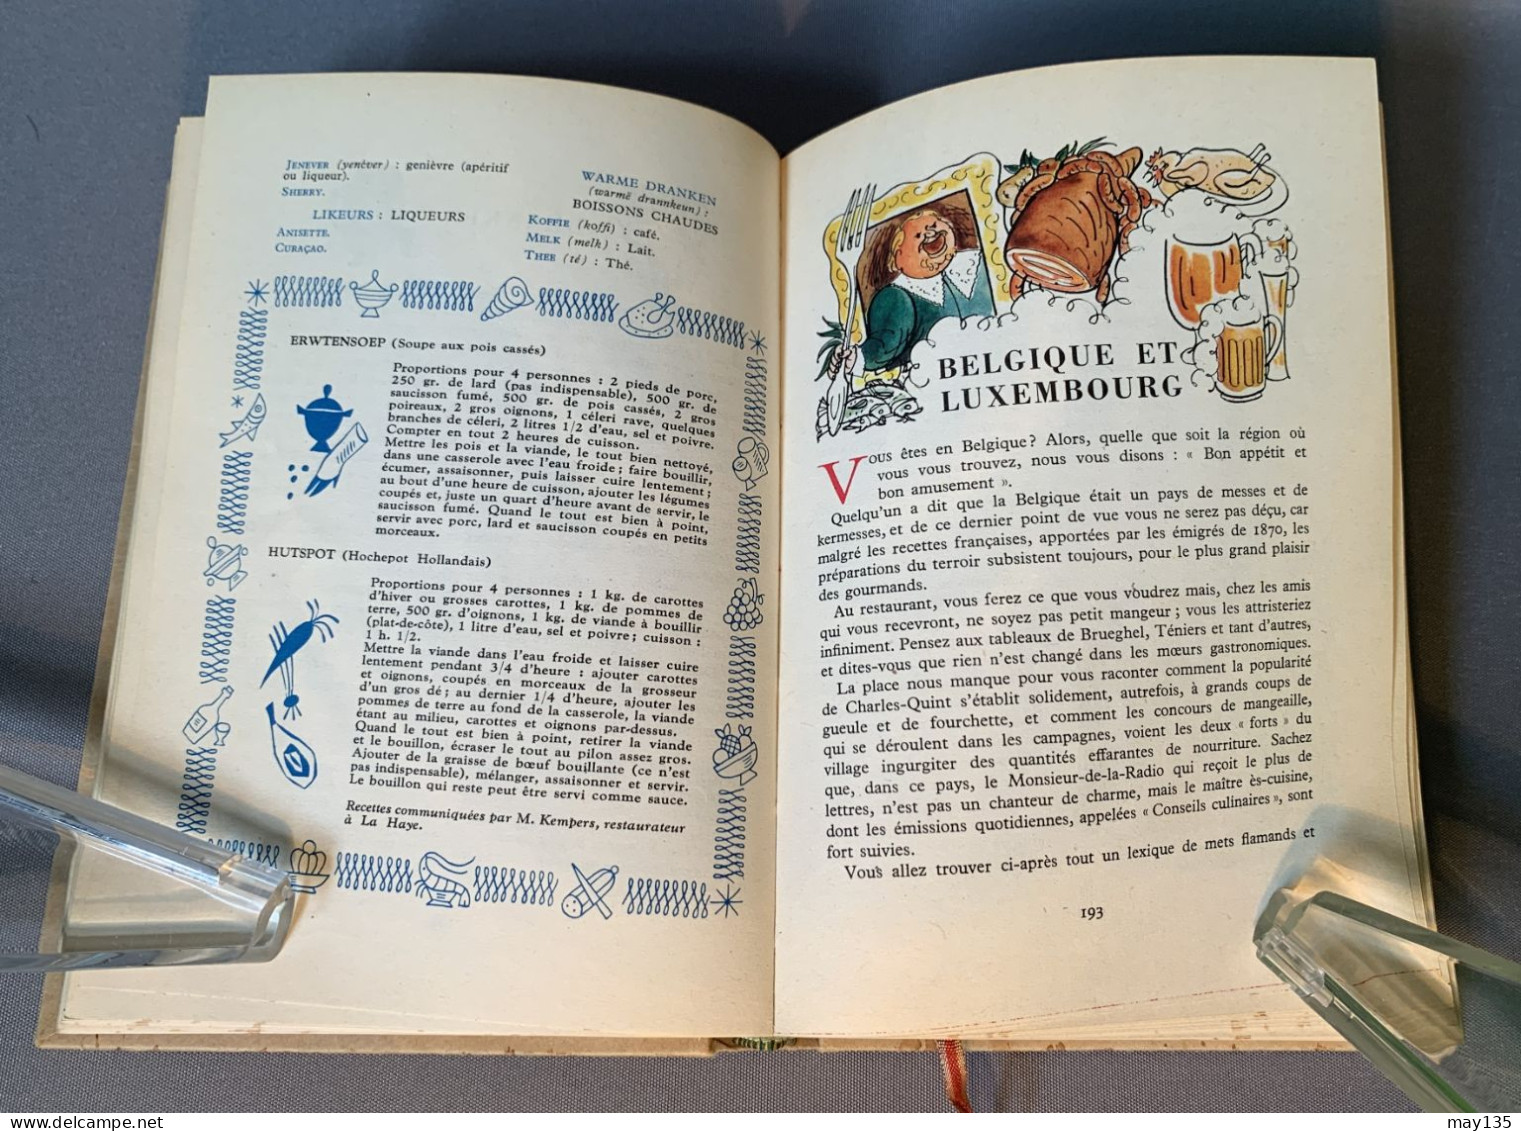 anno 1952 - Le Monde à table -  Illustré - Doré Ogrizek - ed. Odé